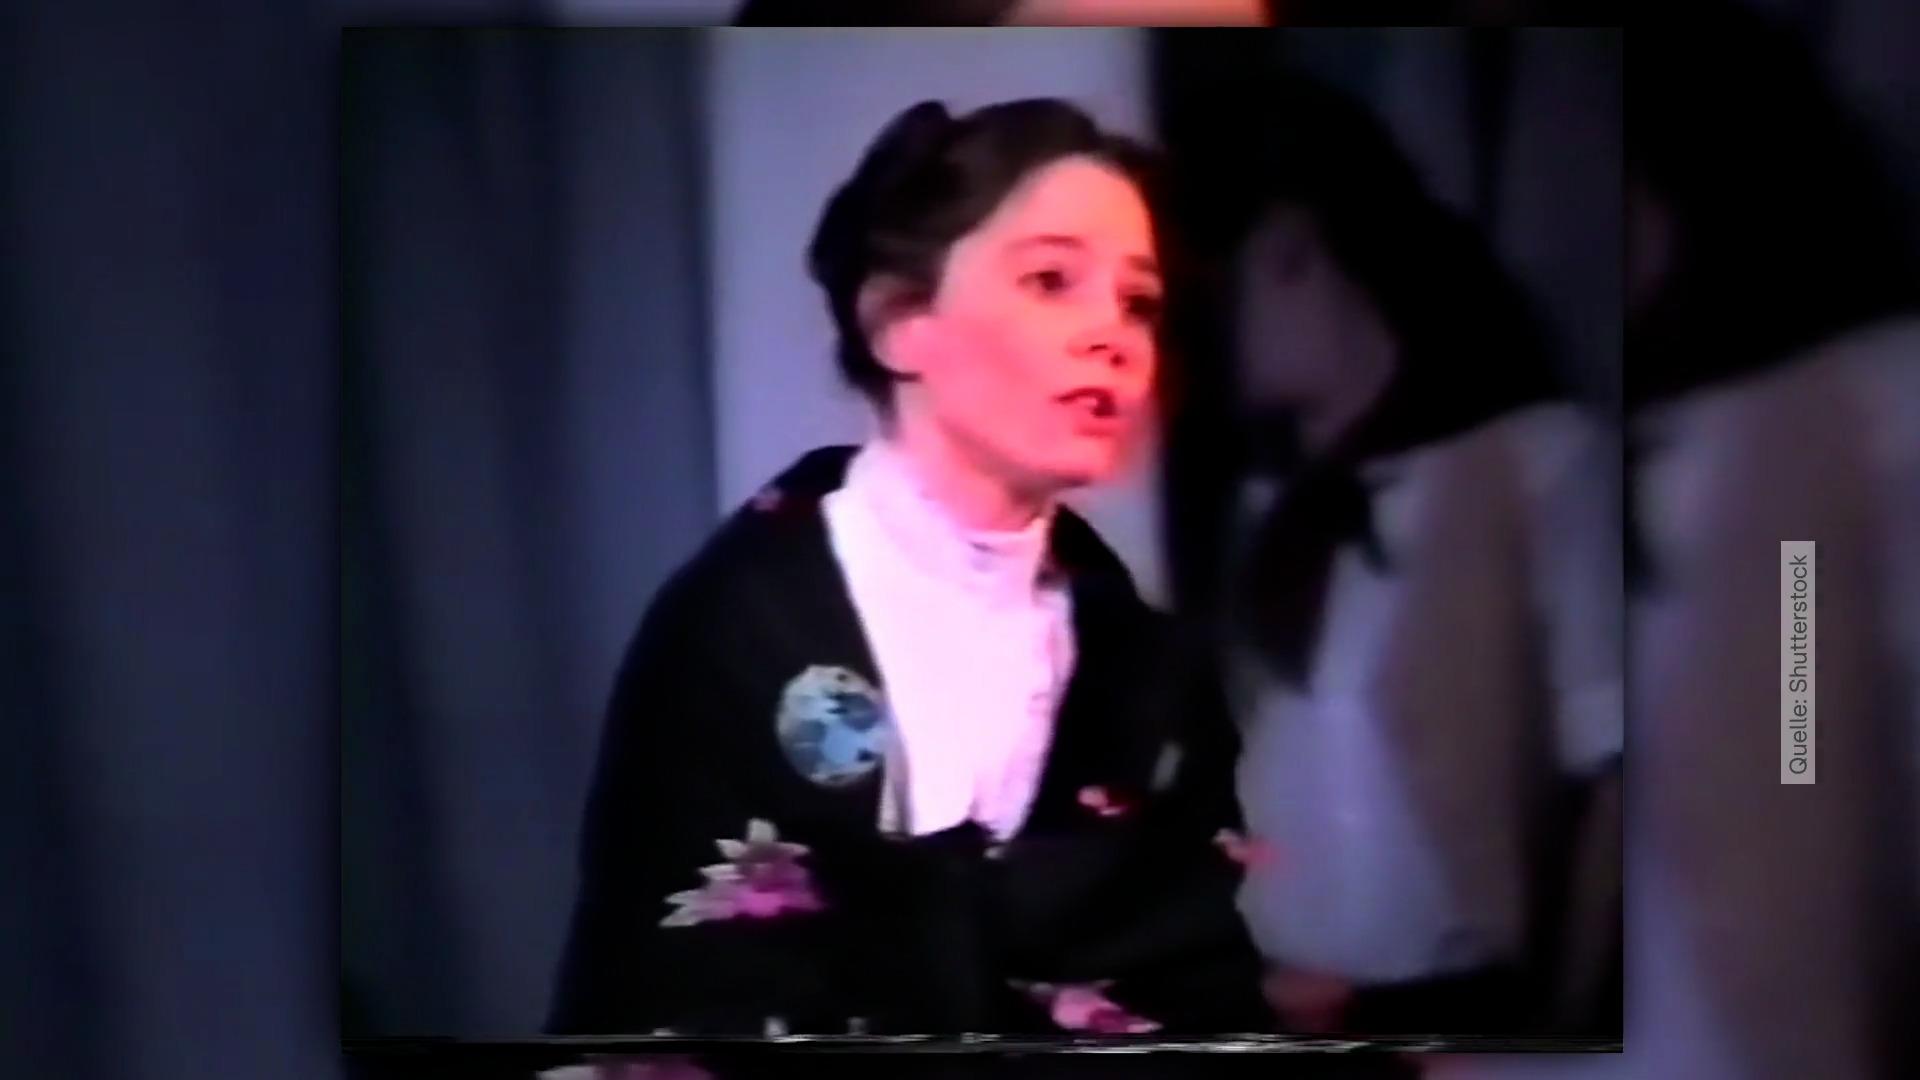 Aquí la princesa Kate canta de niña en el musical Wie "amable" ¿Es esto?